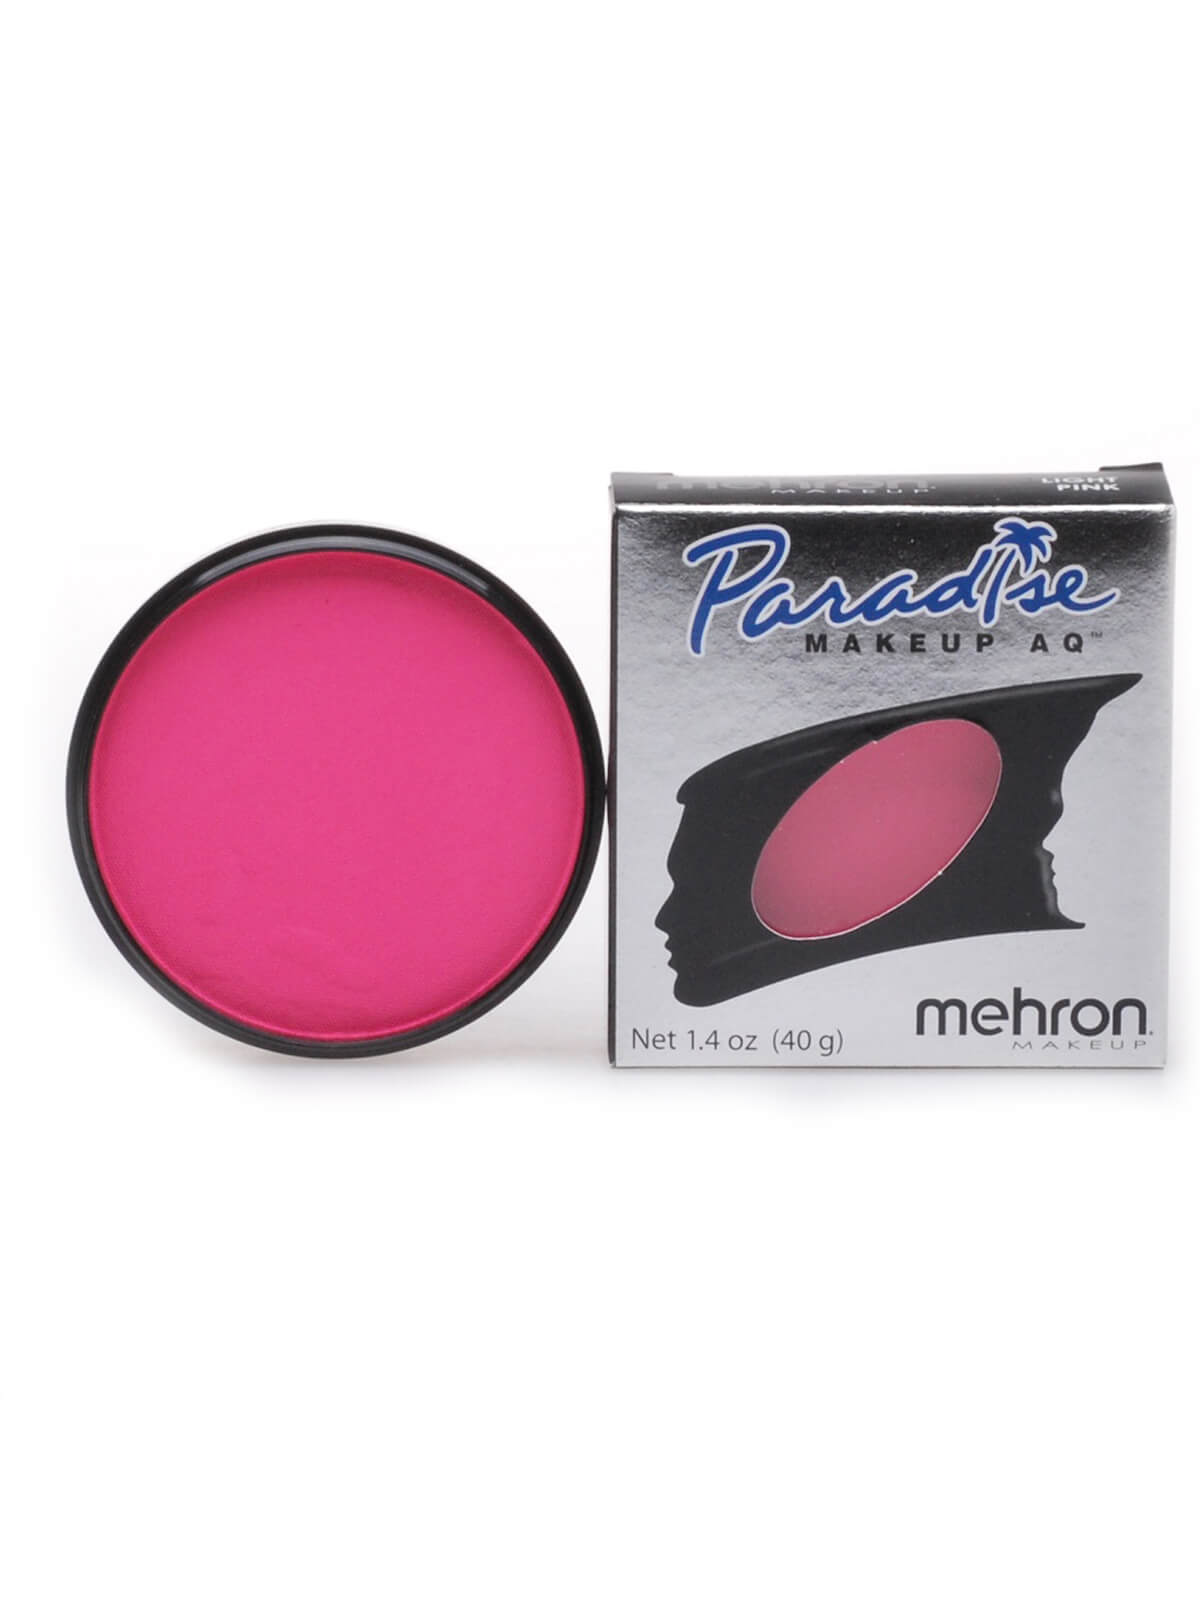 Mehron Paradise Makeup AQ - Pastel - Light Pink